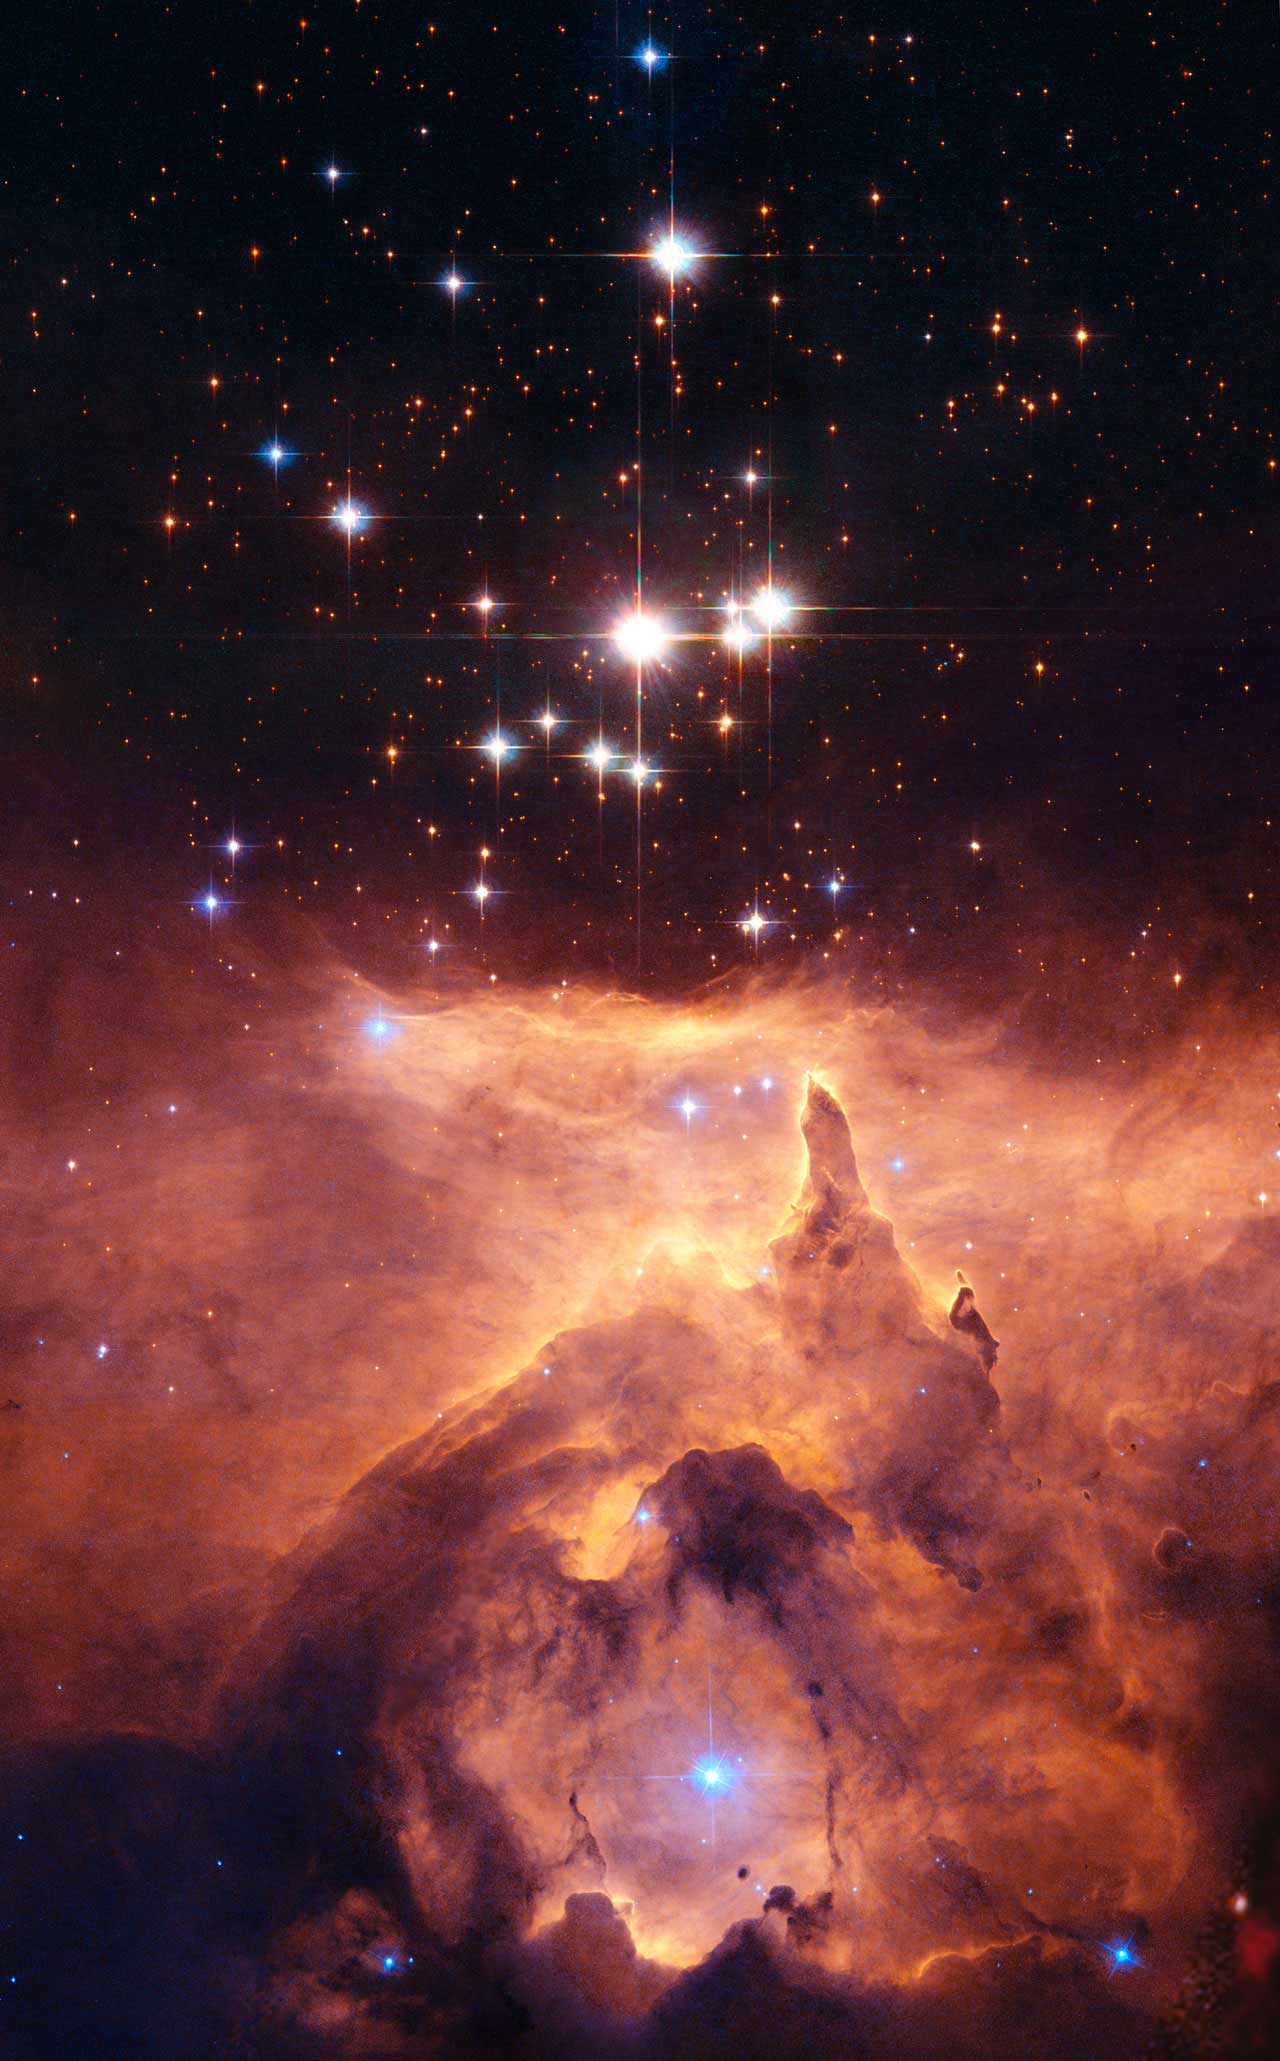 Pismis 24 Hubble